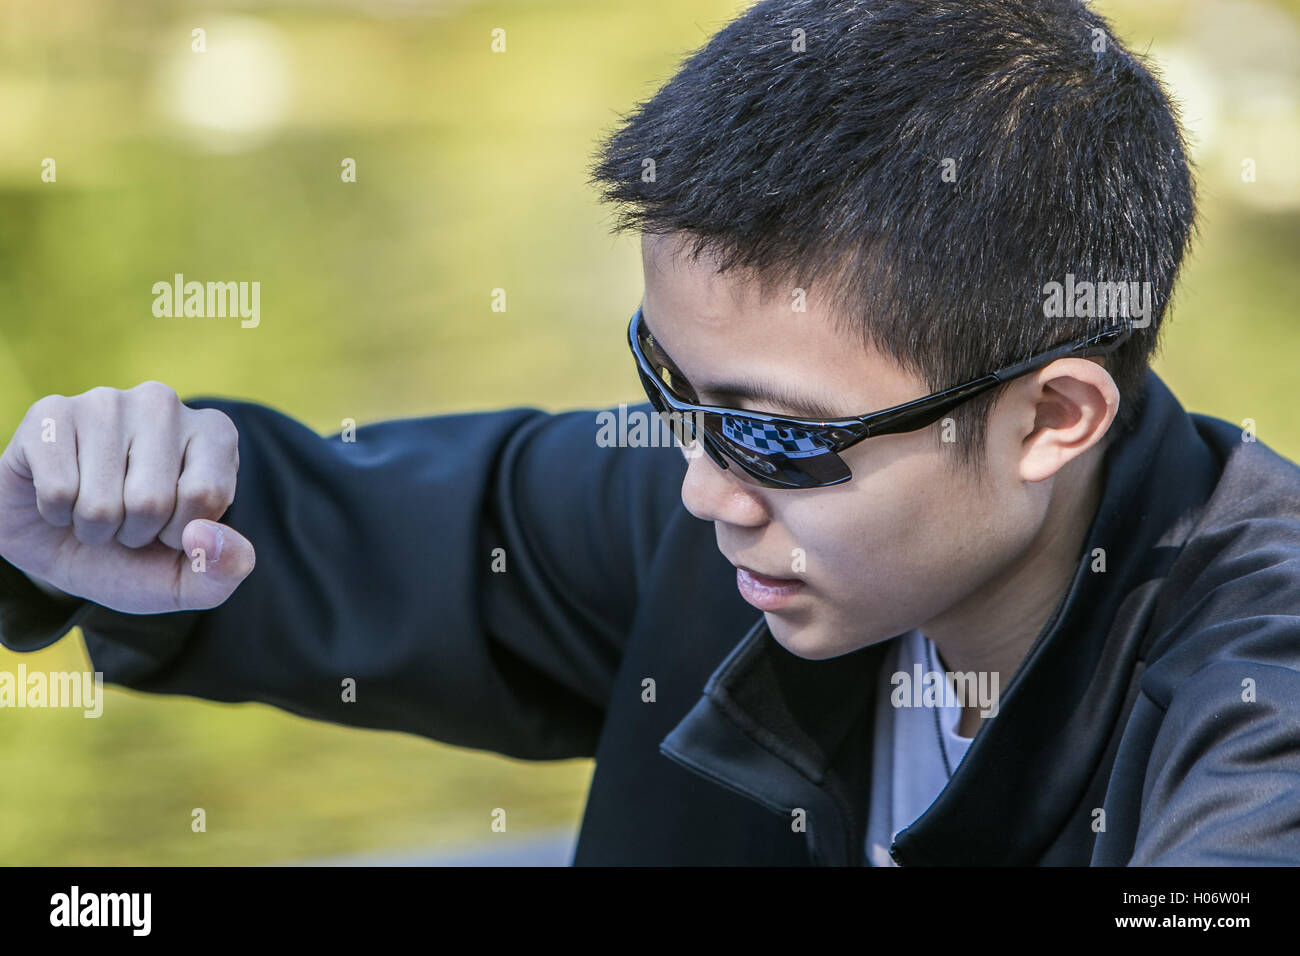 Un niño se mueve durante una partida de ajedrez. El tablero de ajedrez se refleja en sus gafas de sol. Foto de stock